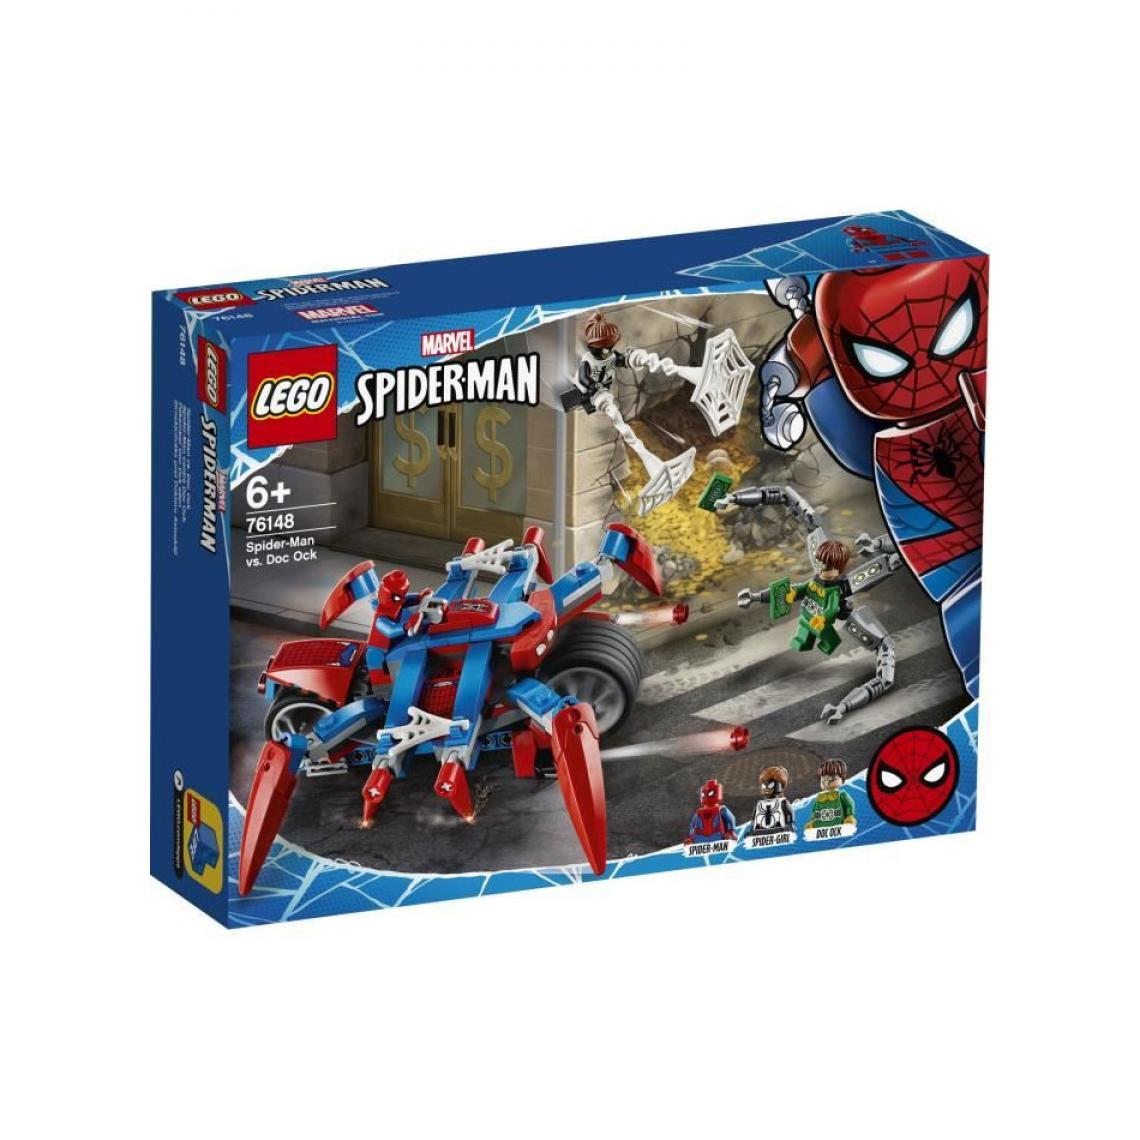 Lego - 76148 Spiderman vs Dock Ock LEGO Marvel Super Heroes - Briques Lego